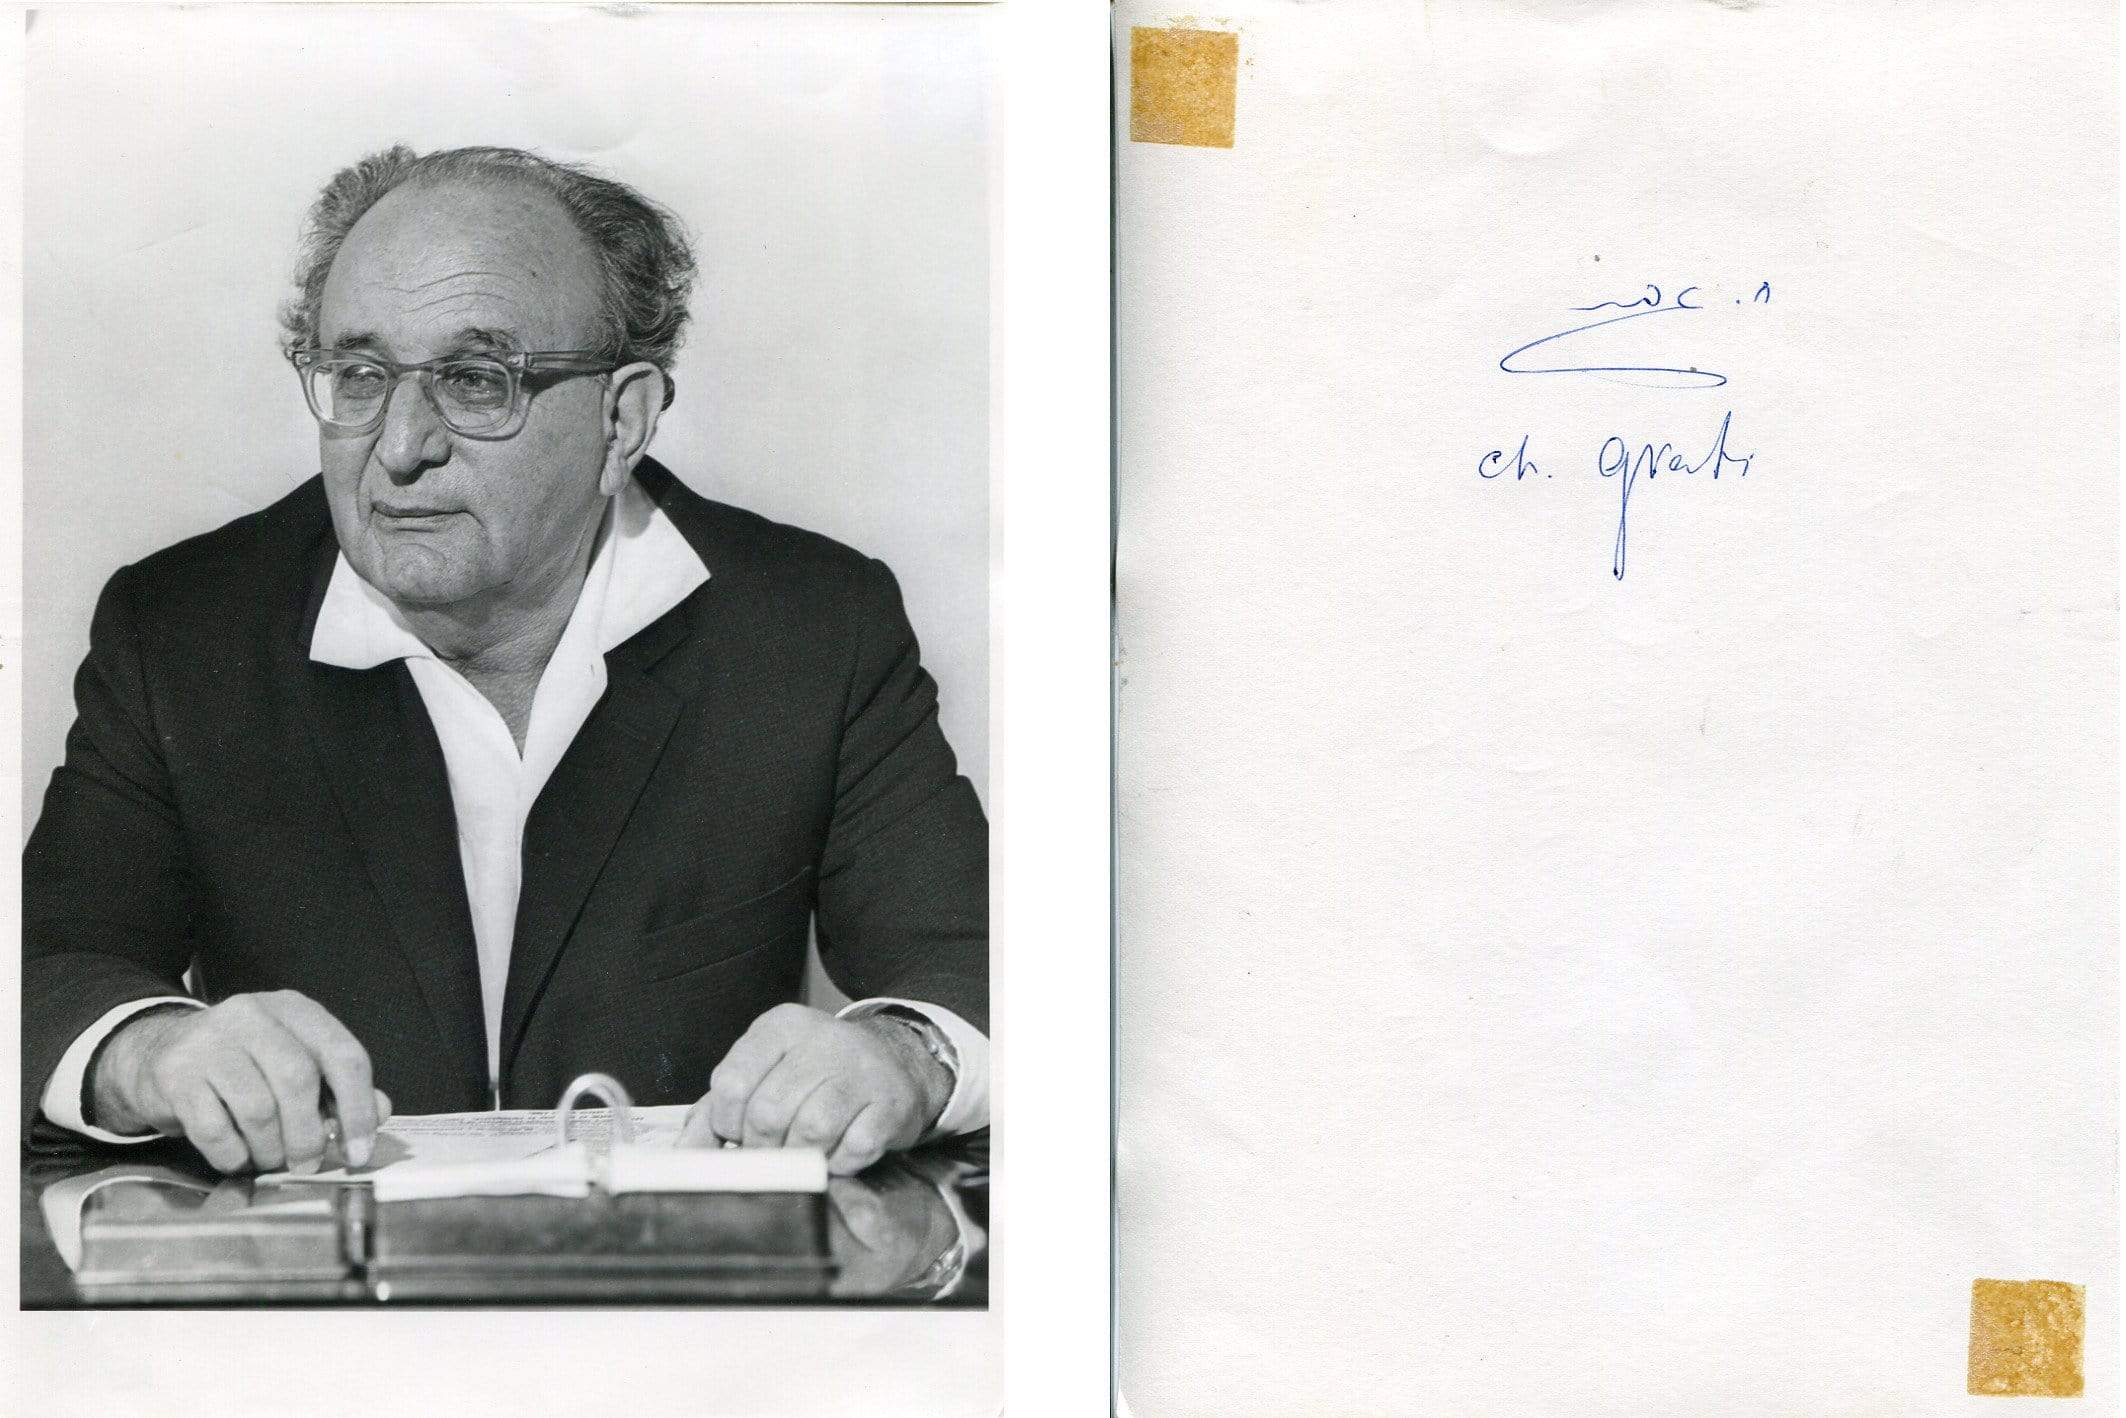 Gvati, Haim autograph